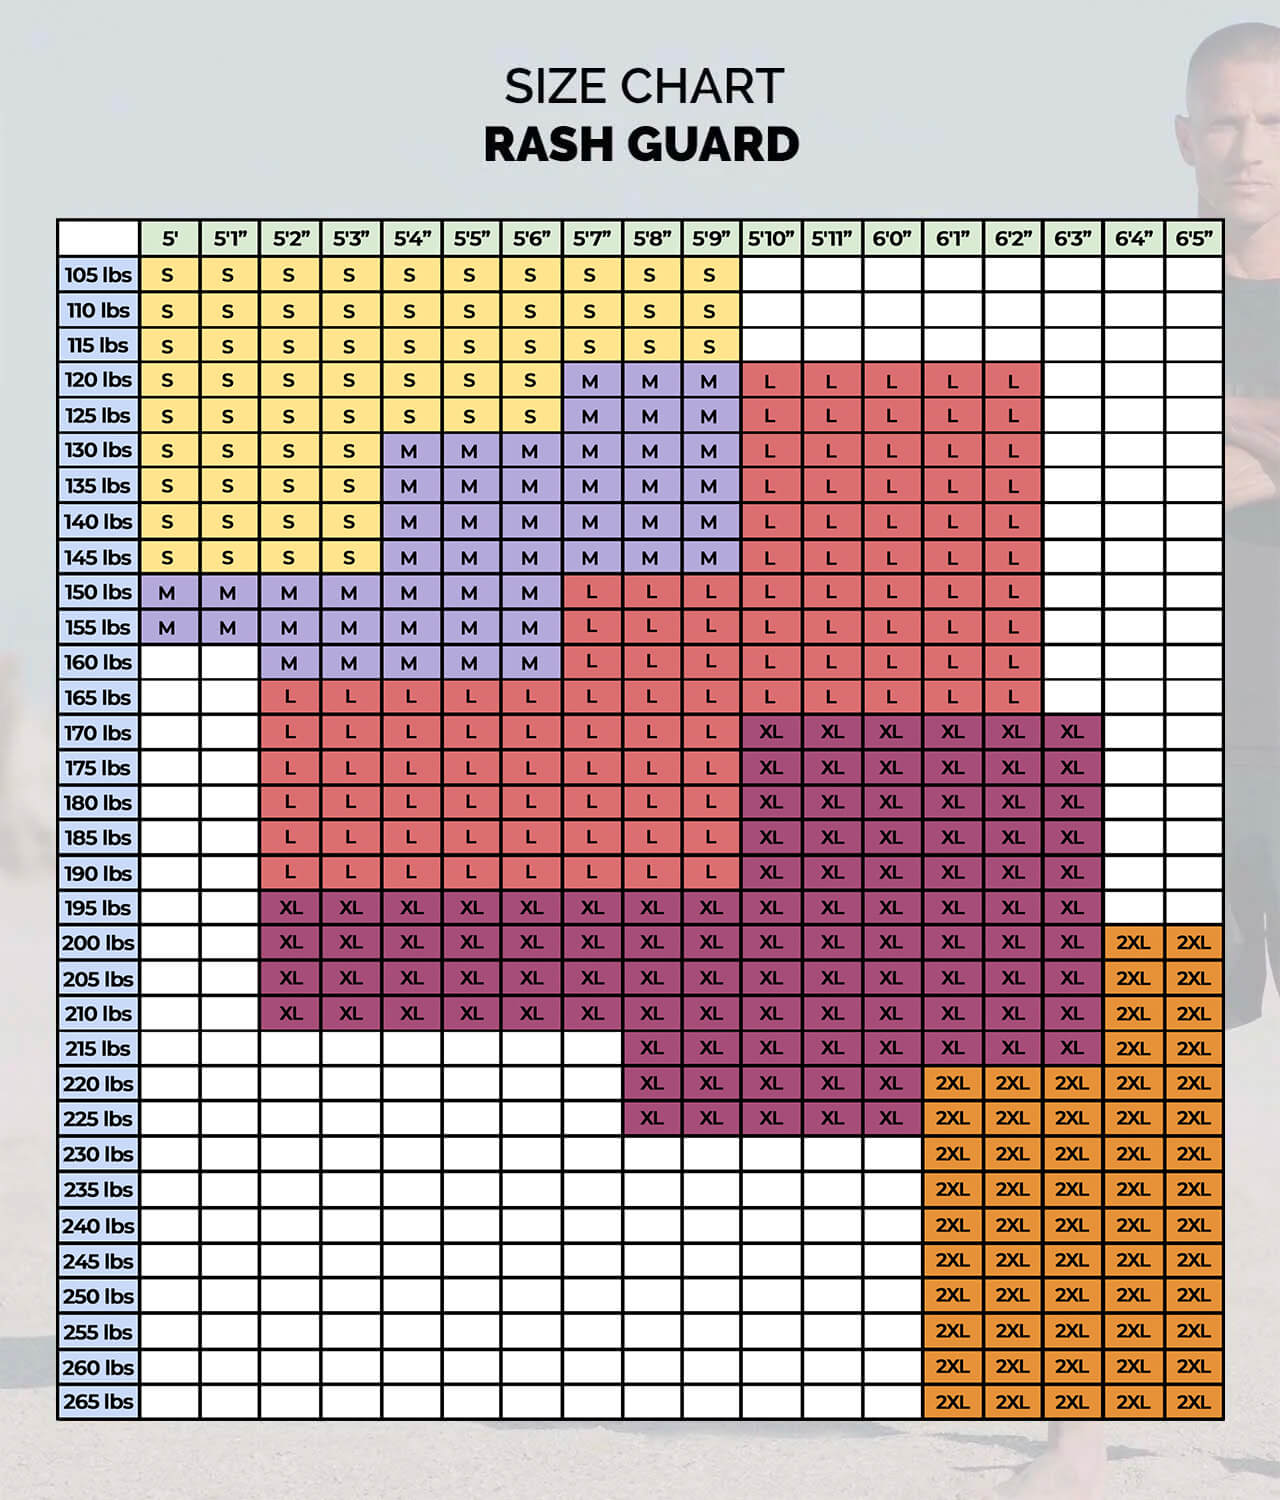 Elite Sports Men's Standard Black Long Sleeve Jiu Jitsu BJJ Rash Guard Size Guide